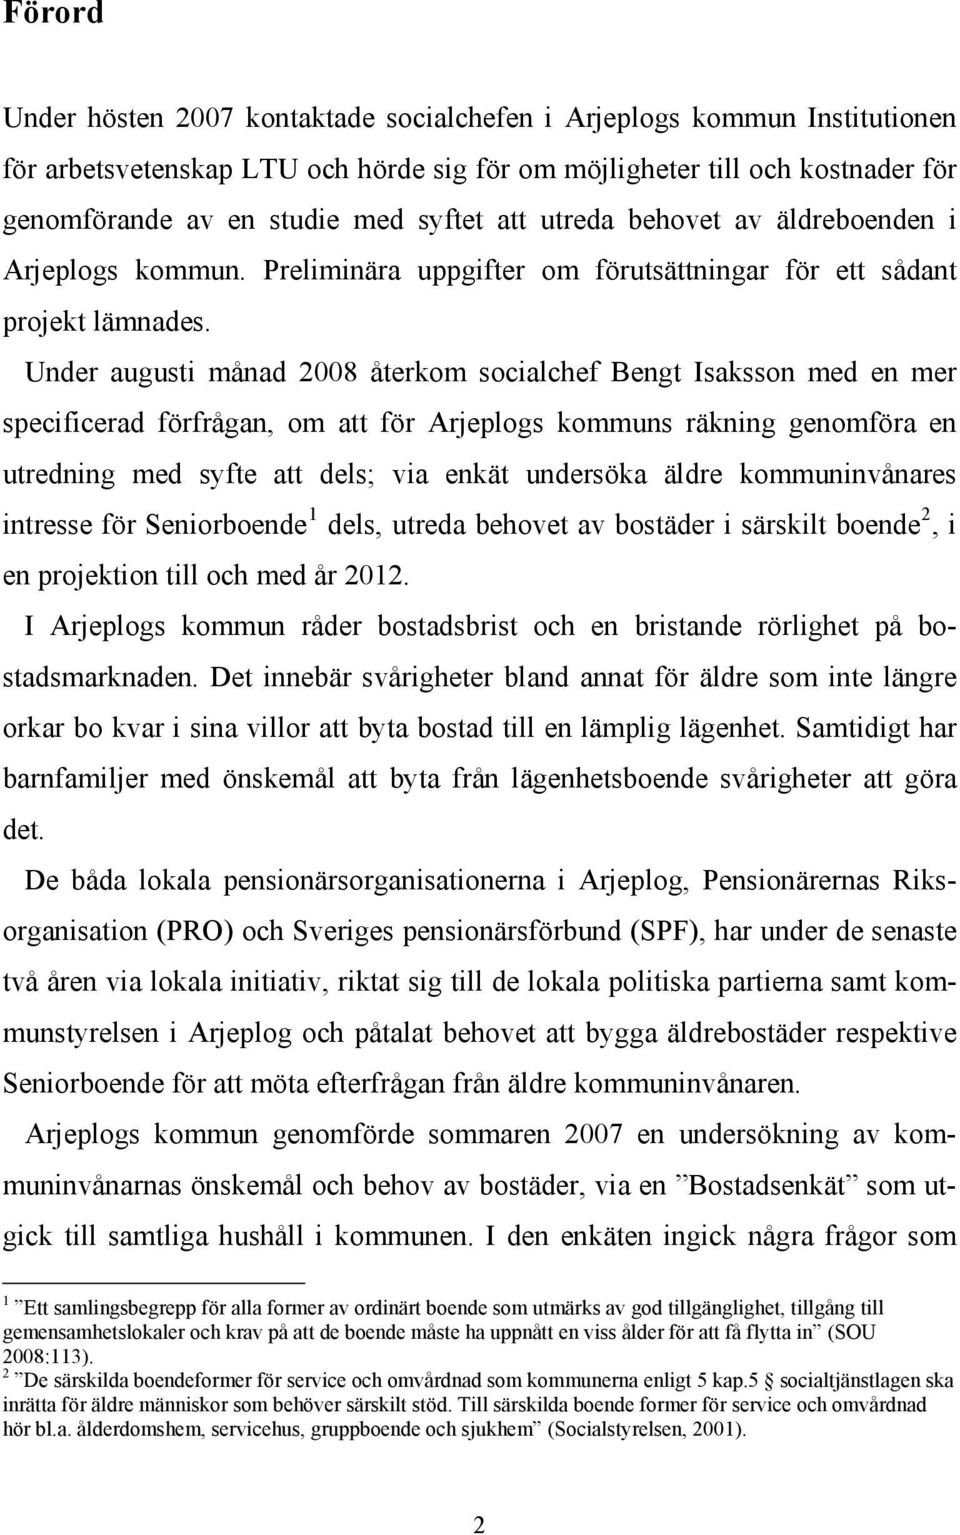 Under augusti månad 2008 återkom socialchef Bengt Isaksson med en mer specificerad förfrågan, om att för Arjeplogs kommuns räkning genomföra en utredning med syfte att dels; via enkät undersöka äldre